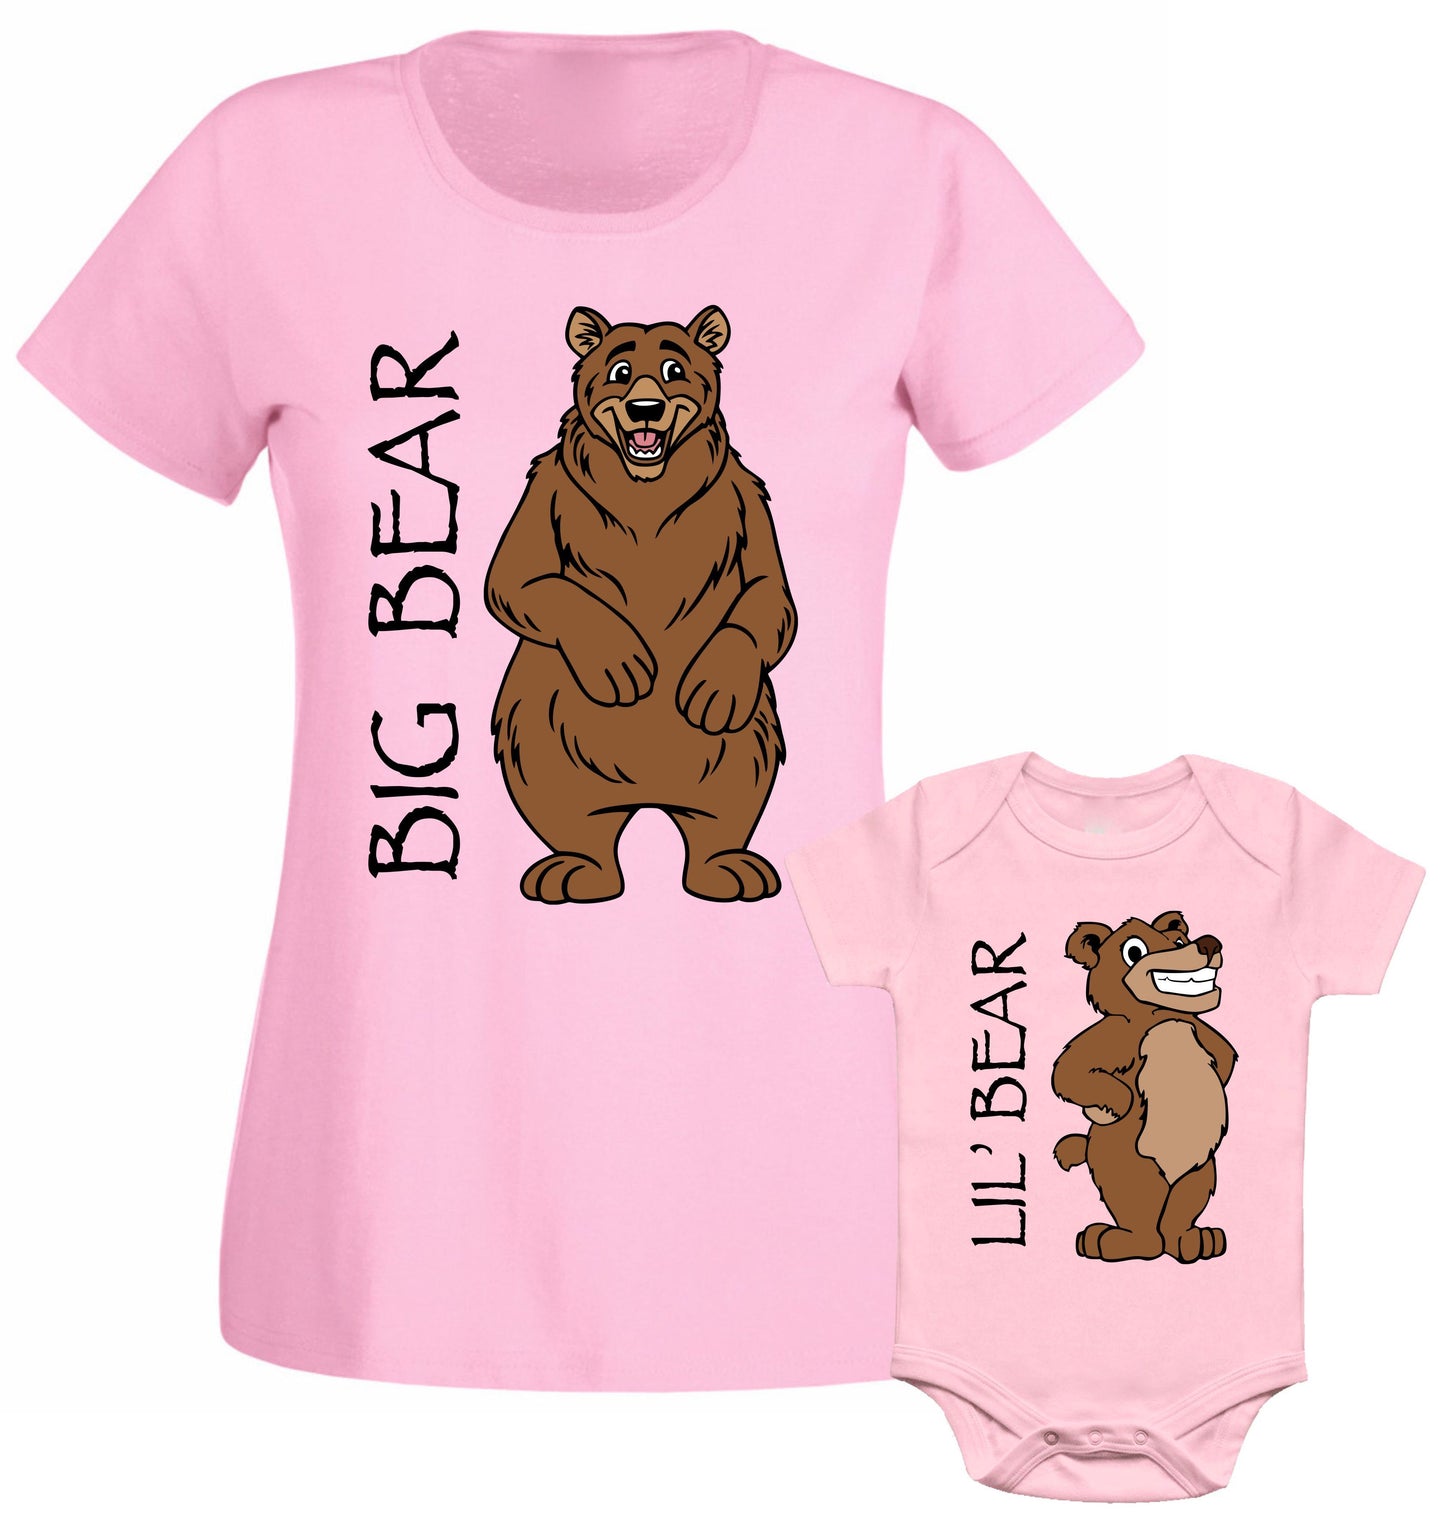 Big Bear Little Bear Mummy Son Daughter Mom Family Matching T shirt